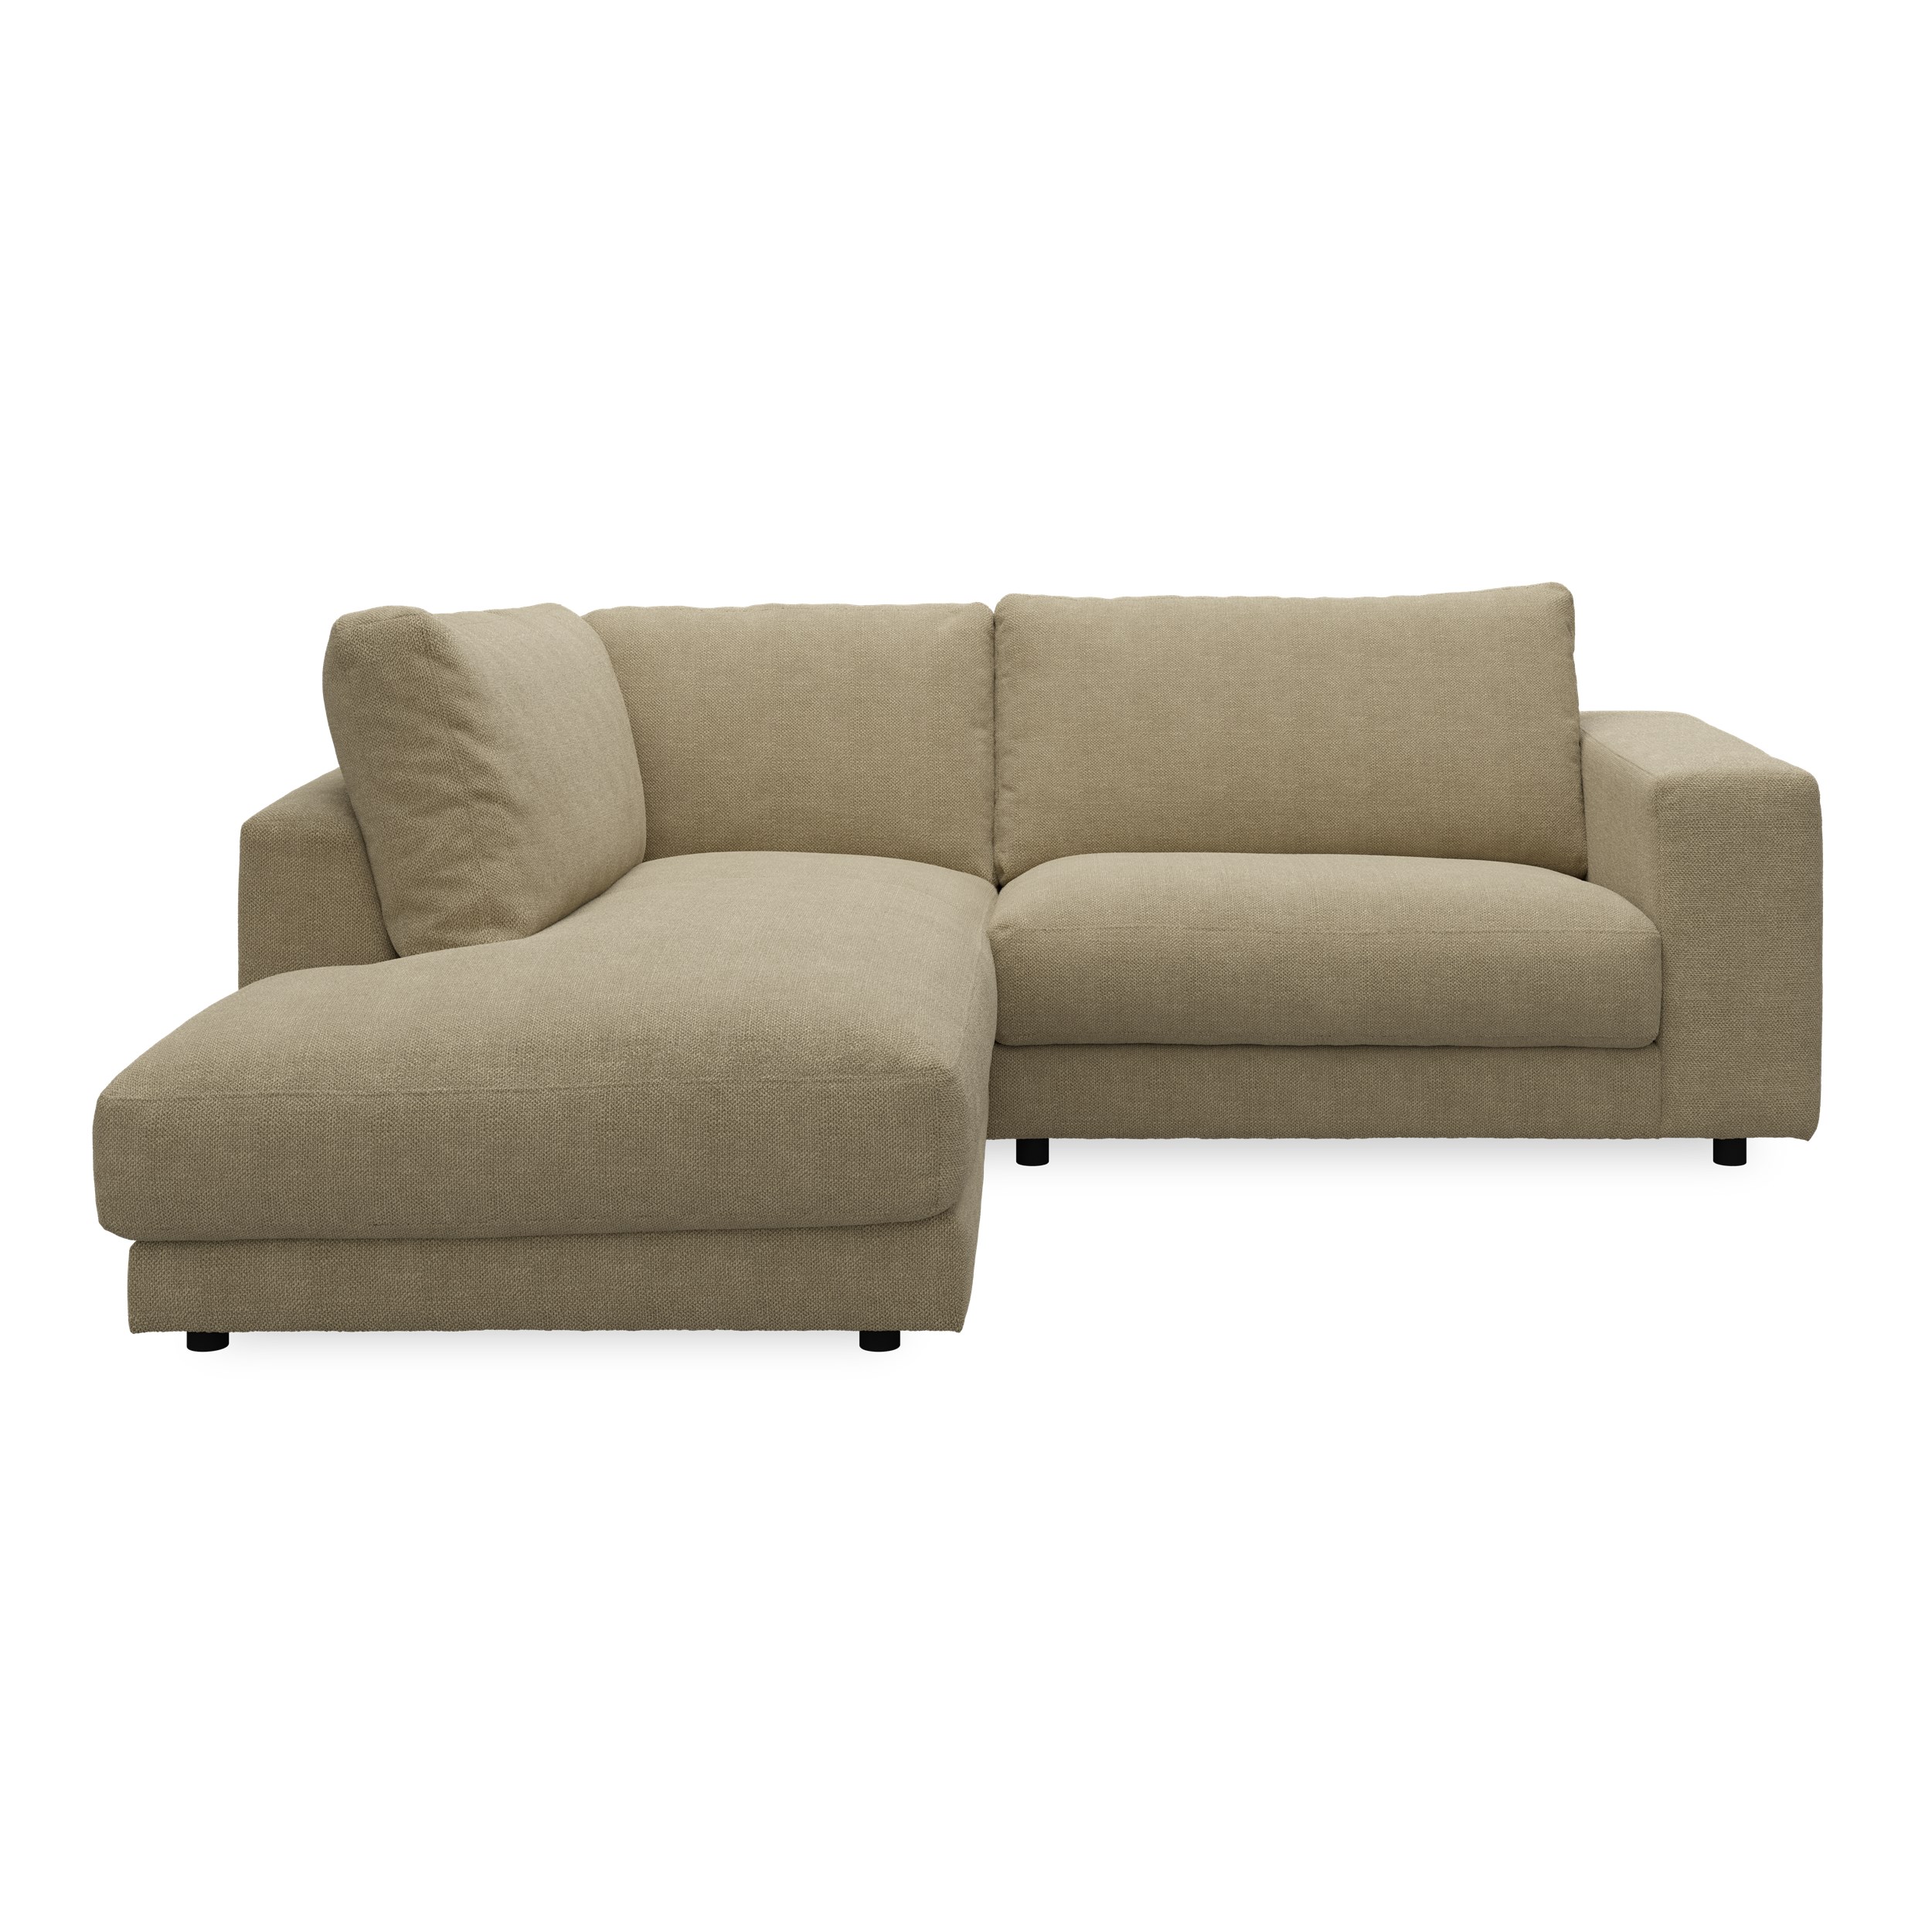 Bennent vänstervänd soffa med divan - Picasso Sand klädsel, ben i svart plast och S:skum/fib/din/sili R:Dun/skum